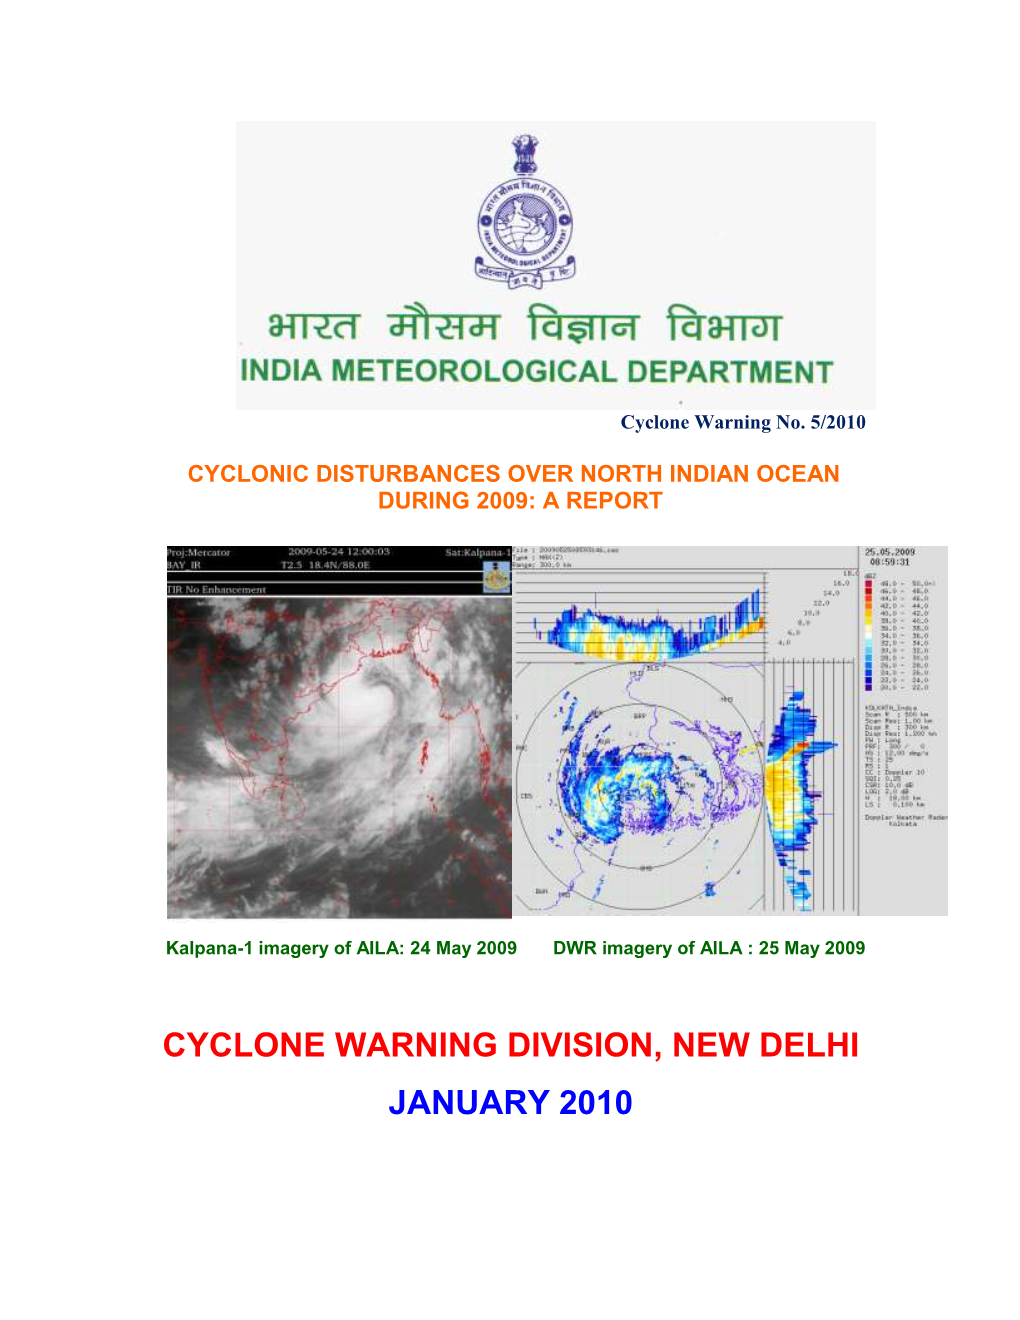 Cyclone Warning Division, New Delhi January 2010